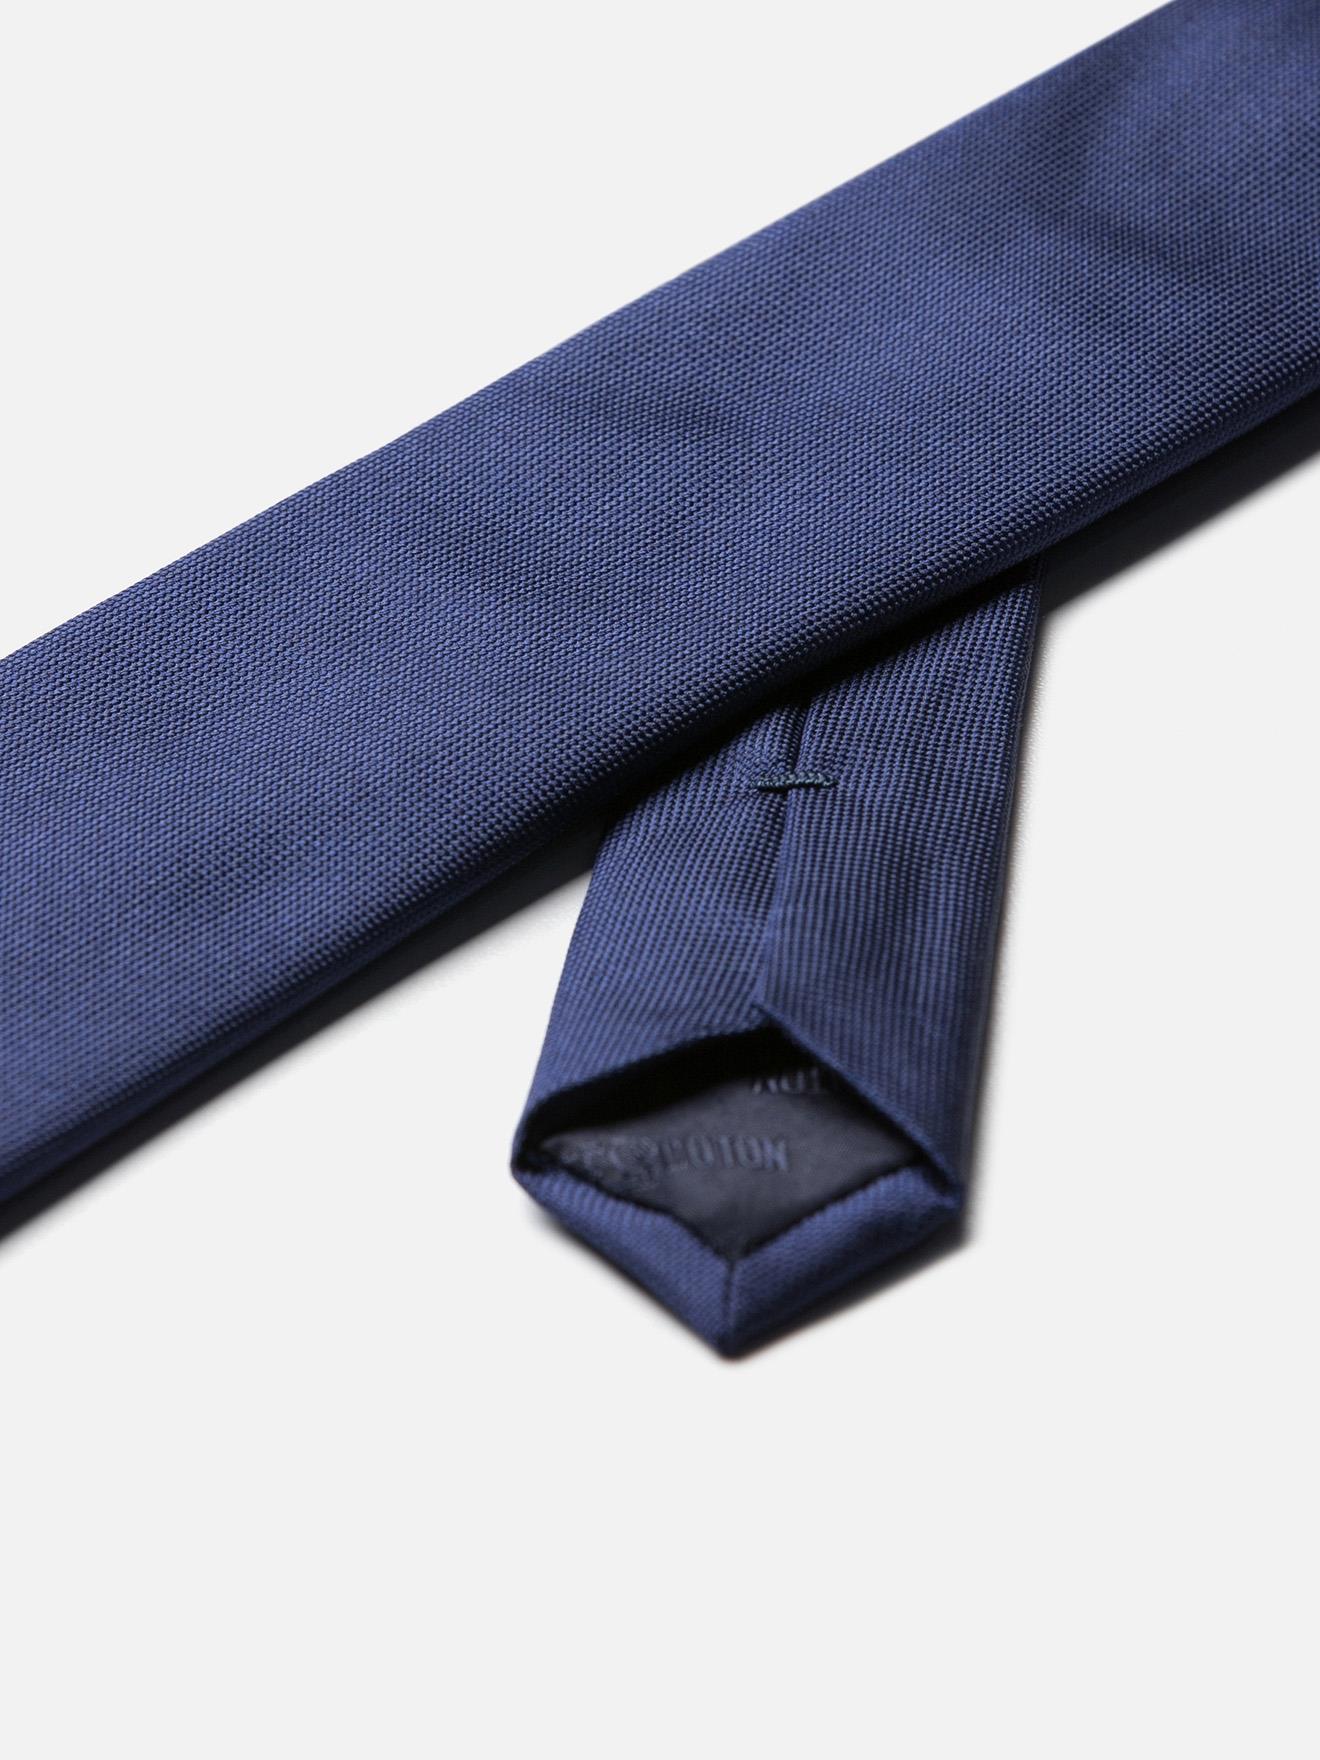 Cravate fine en soie bleue